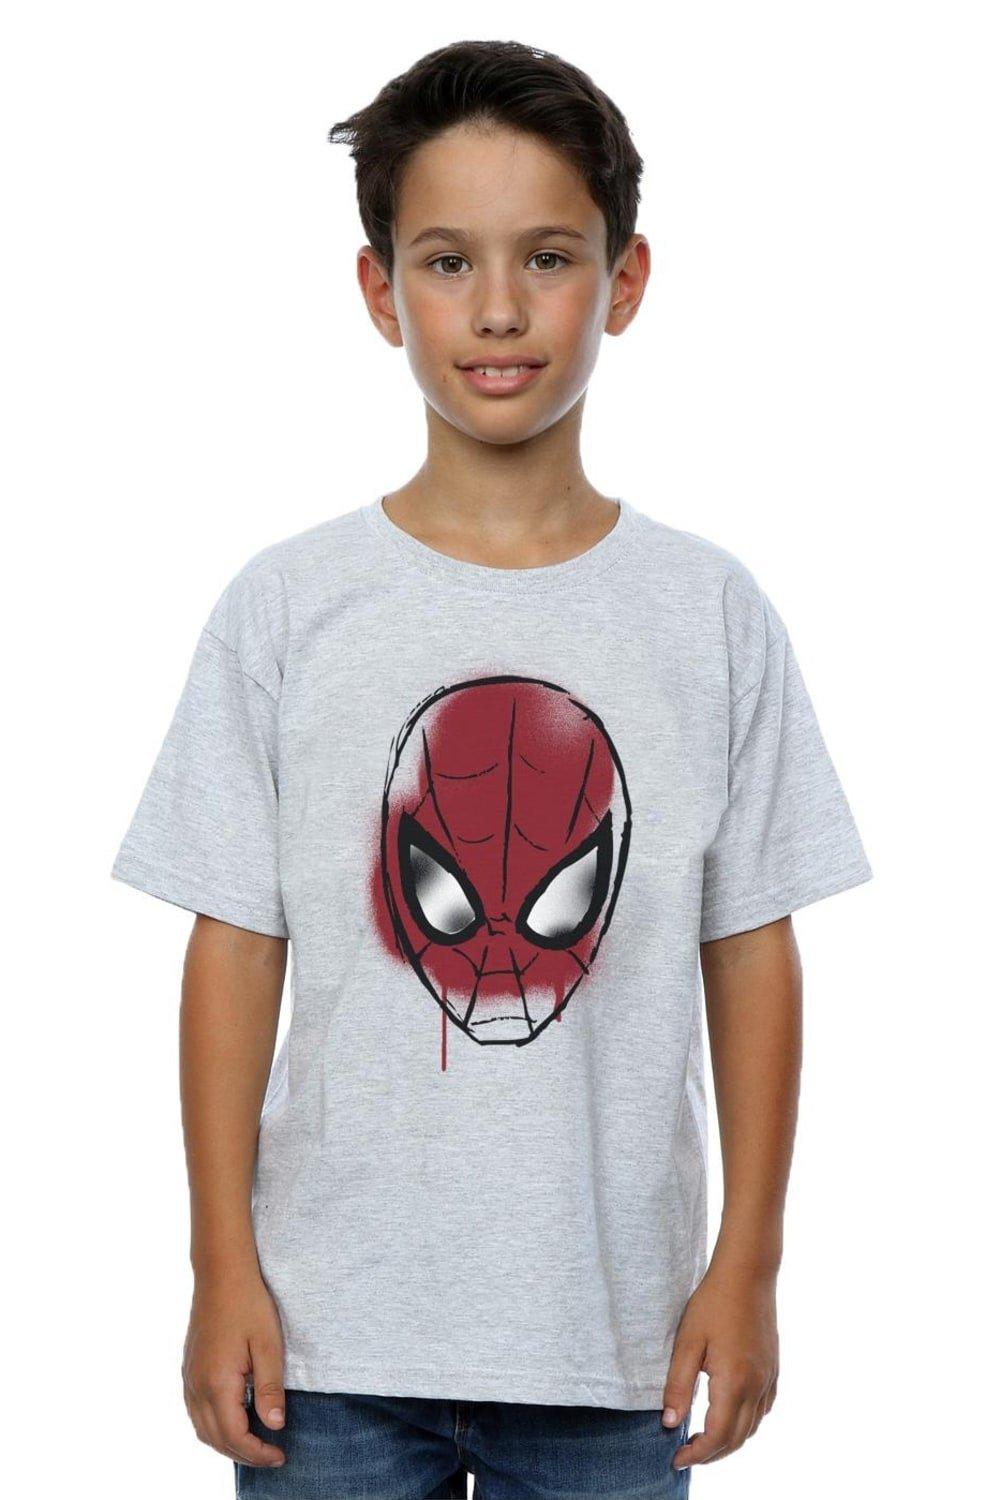 Футболка с эскизом лица Человека-паука Marvel, серый